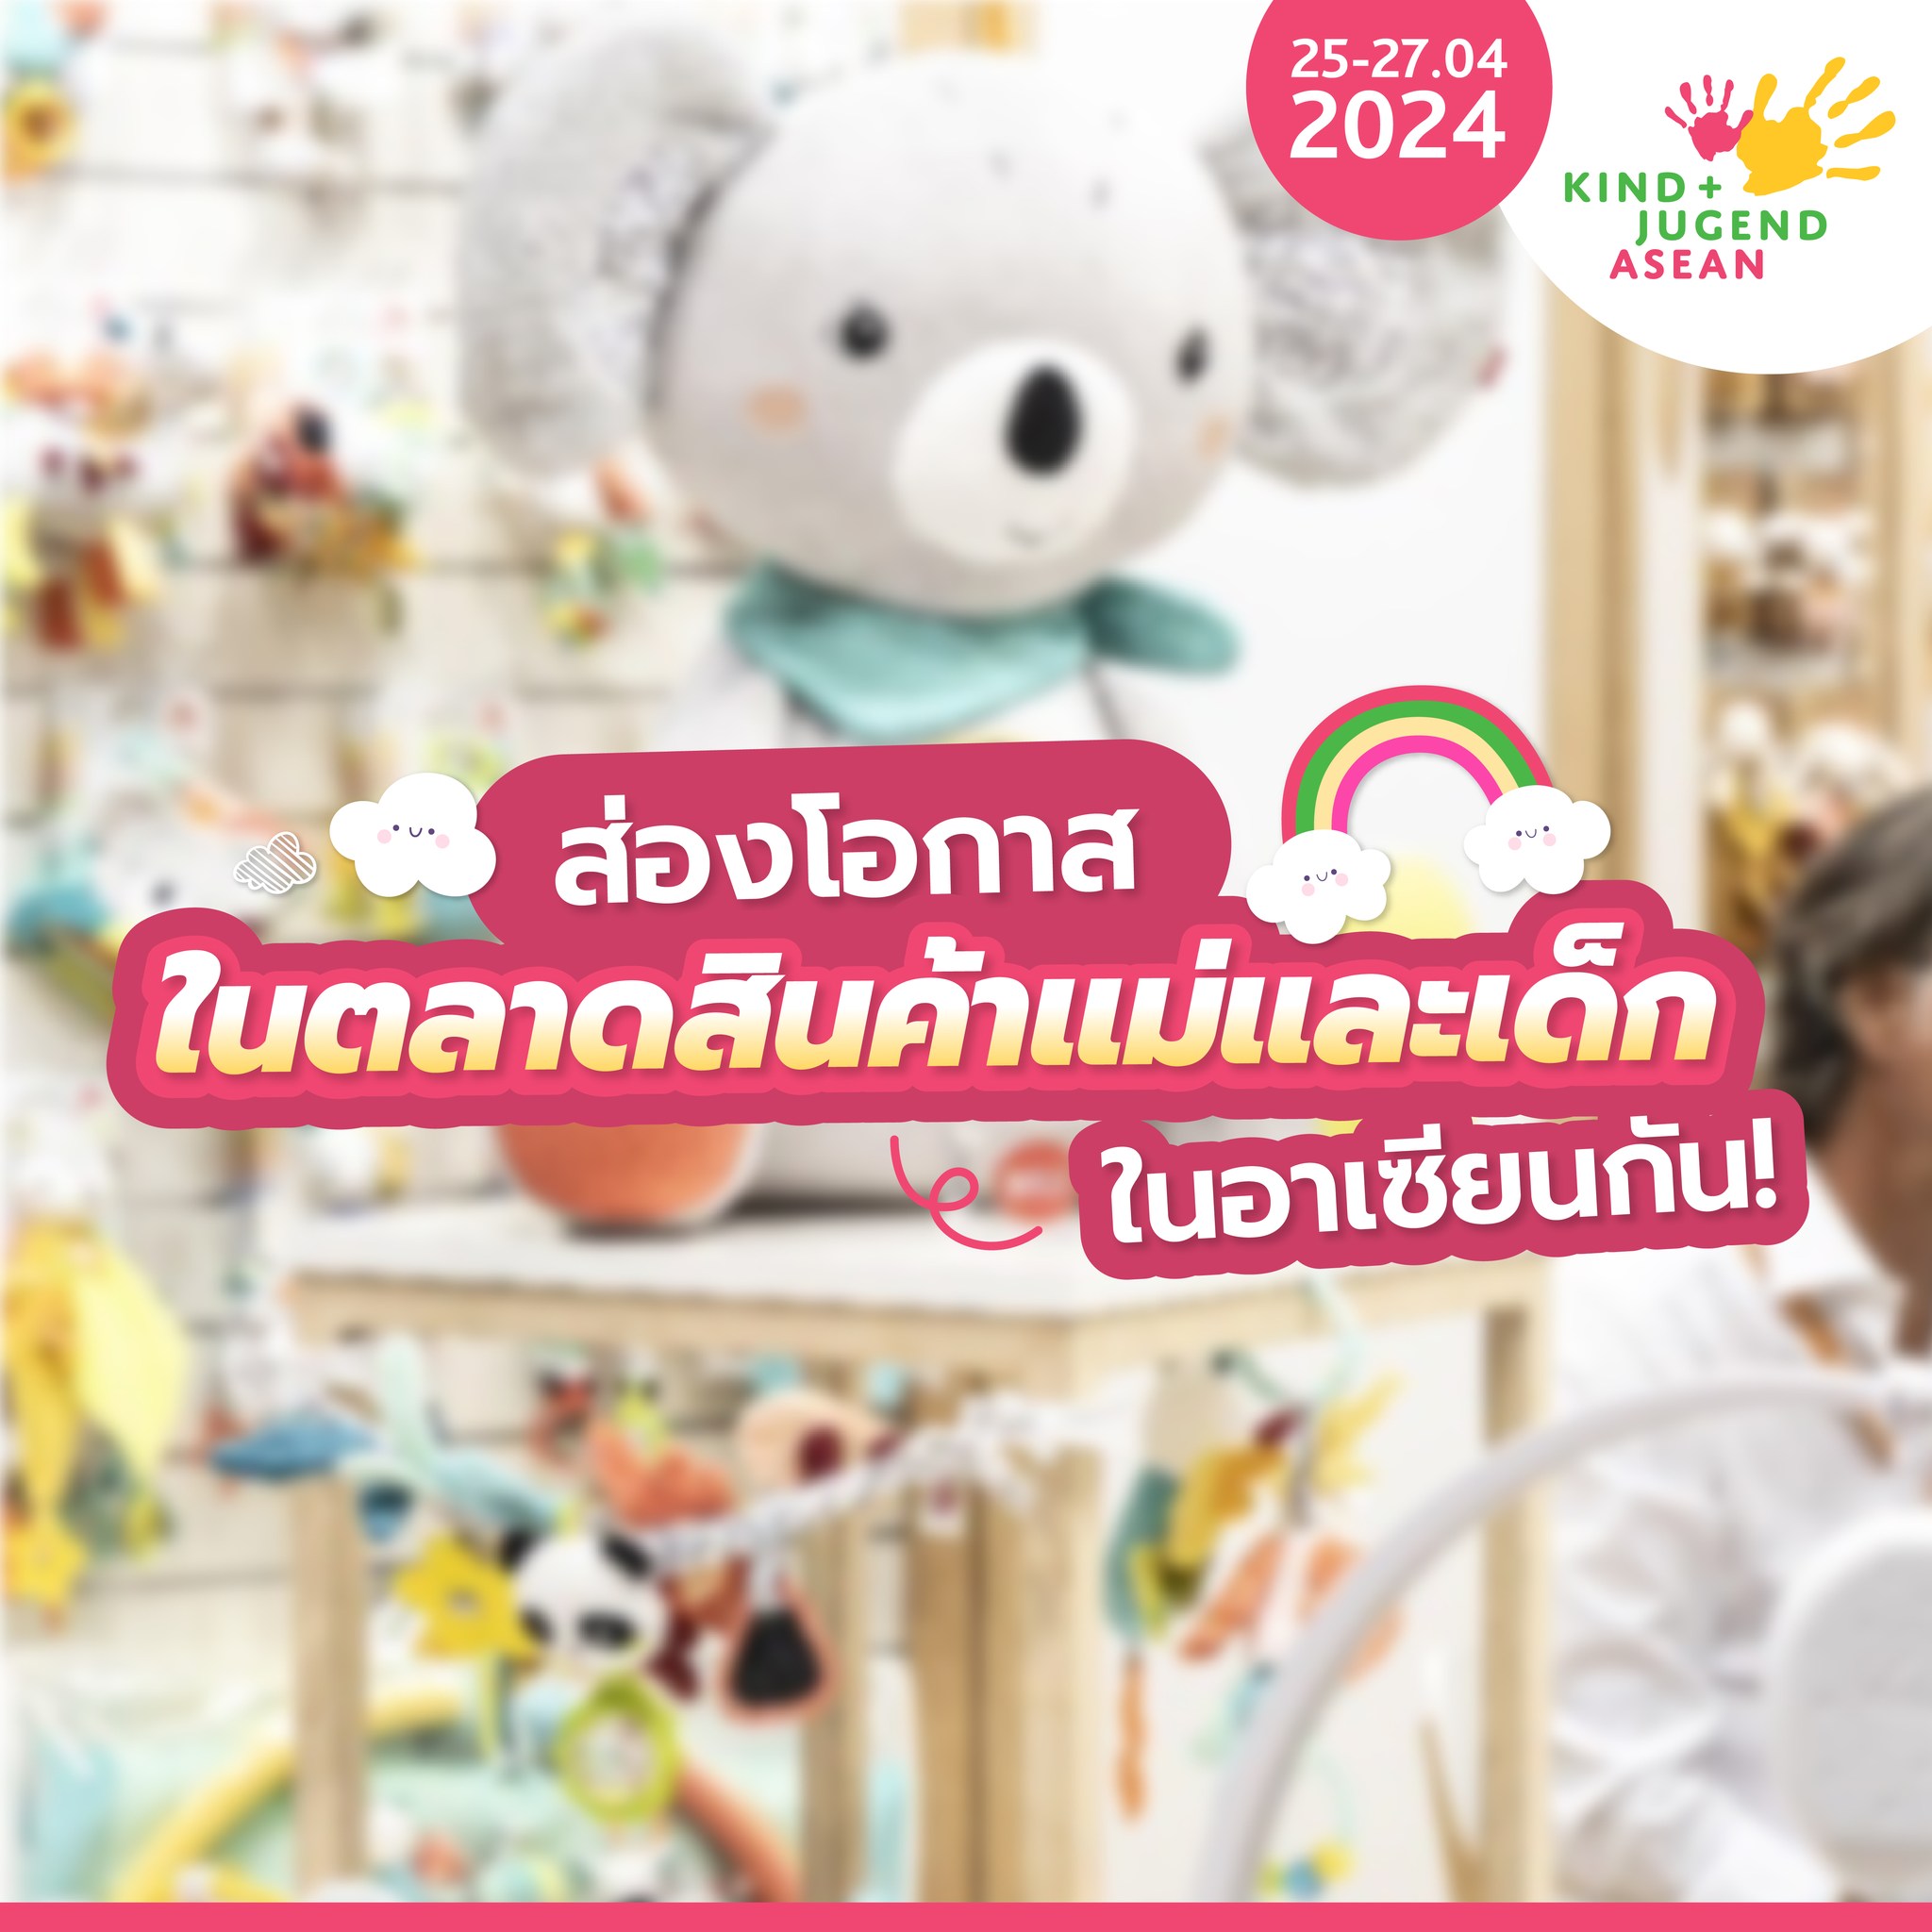 ข่าวอีเว้นท์ - นับถอยหลังเตรียมพบกับ Kind + Jugend ASEAN 2024 วันที่ 25 - 27 เม.ย. 67 ลงทะเบียนล่วงหน้า ลุ้นรับ Art Toy จาก POPMART ได้แล้ววันนี้